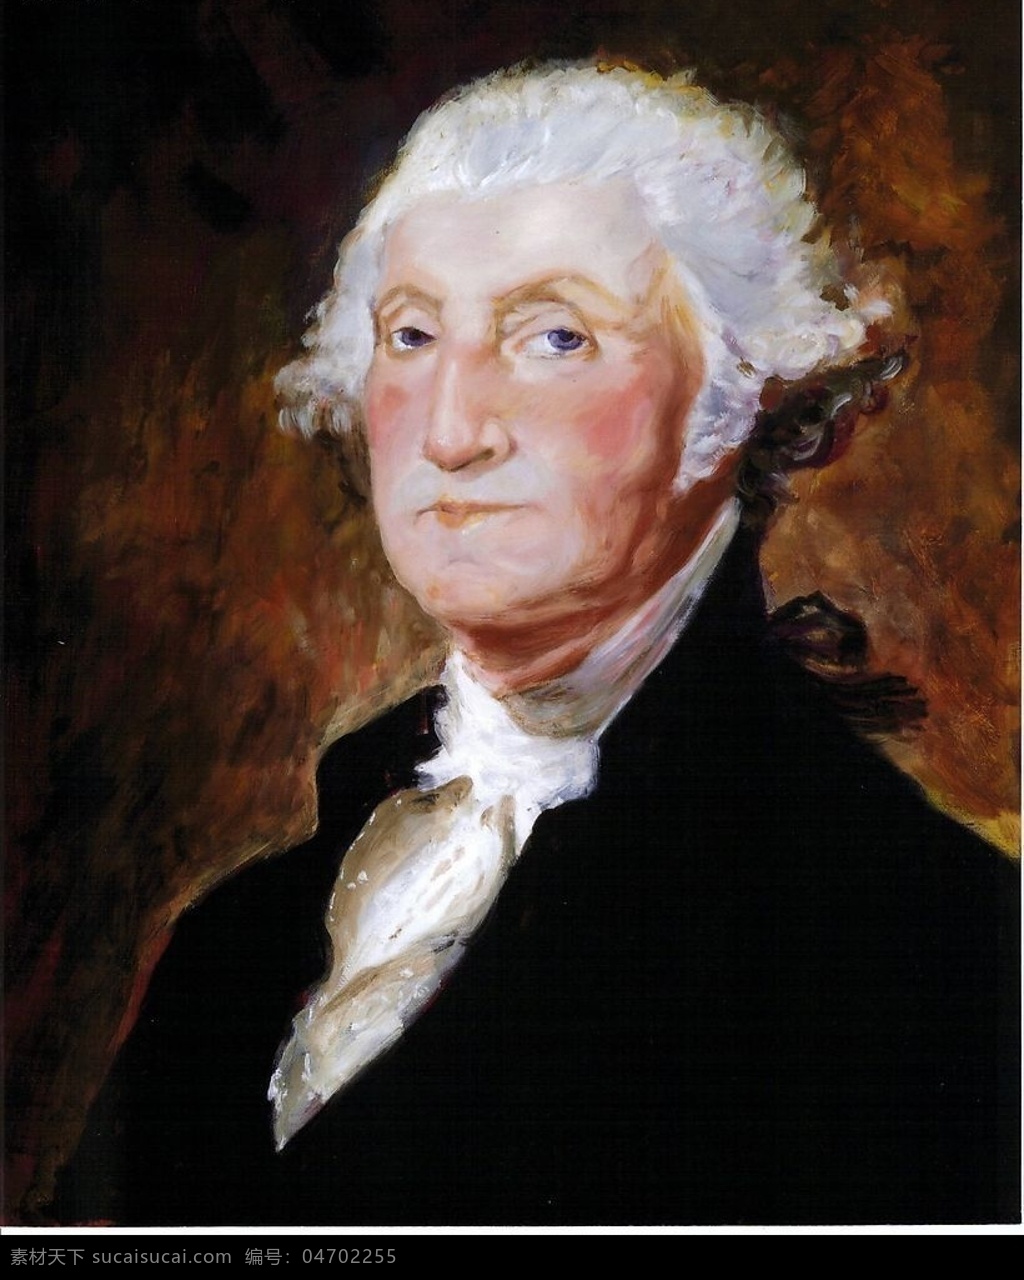 美国 首任 总统 乔治 华盛顿 george washington 文化艺术 绘画书法 人物肖像油画 设计图库 油画